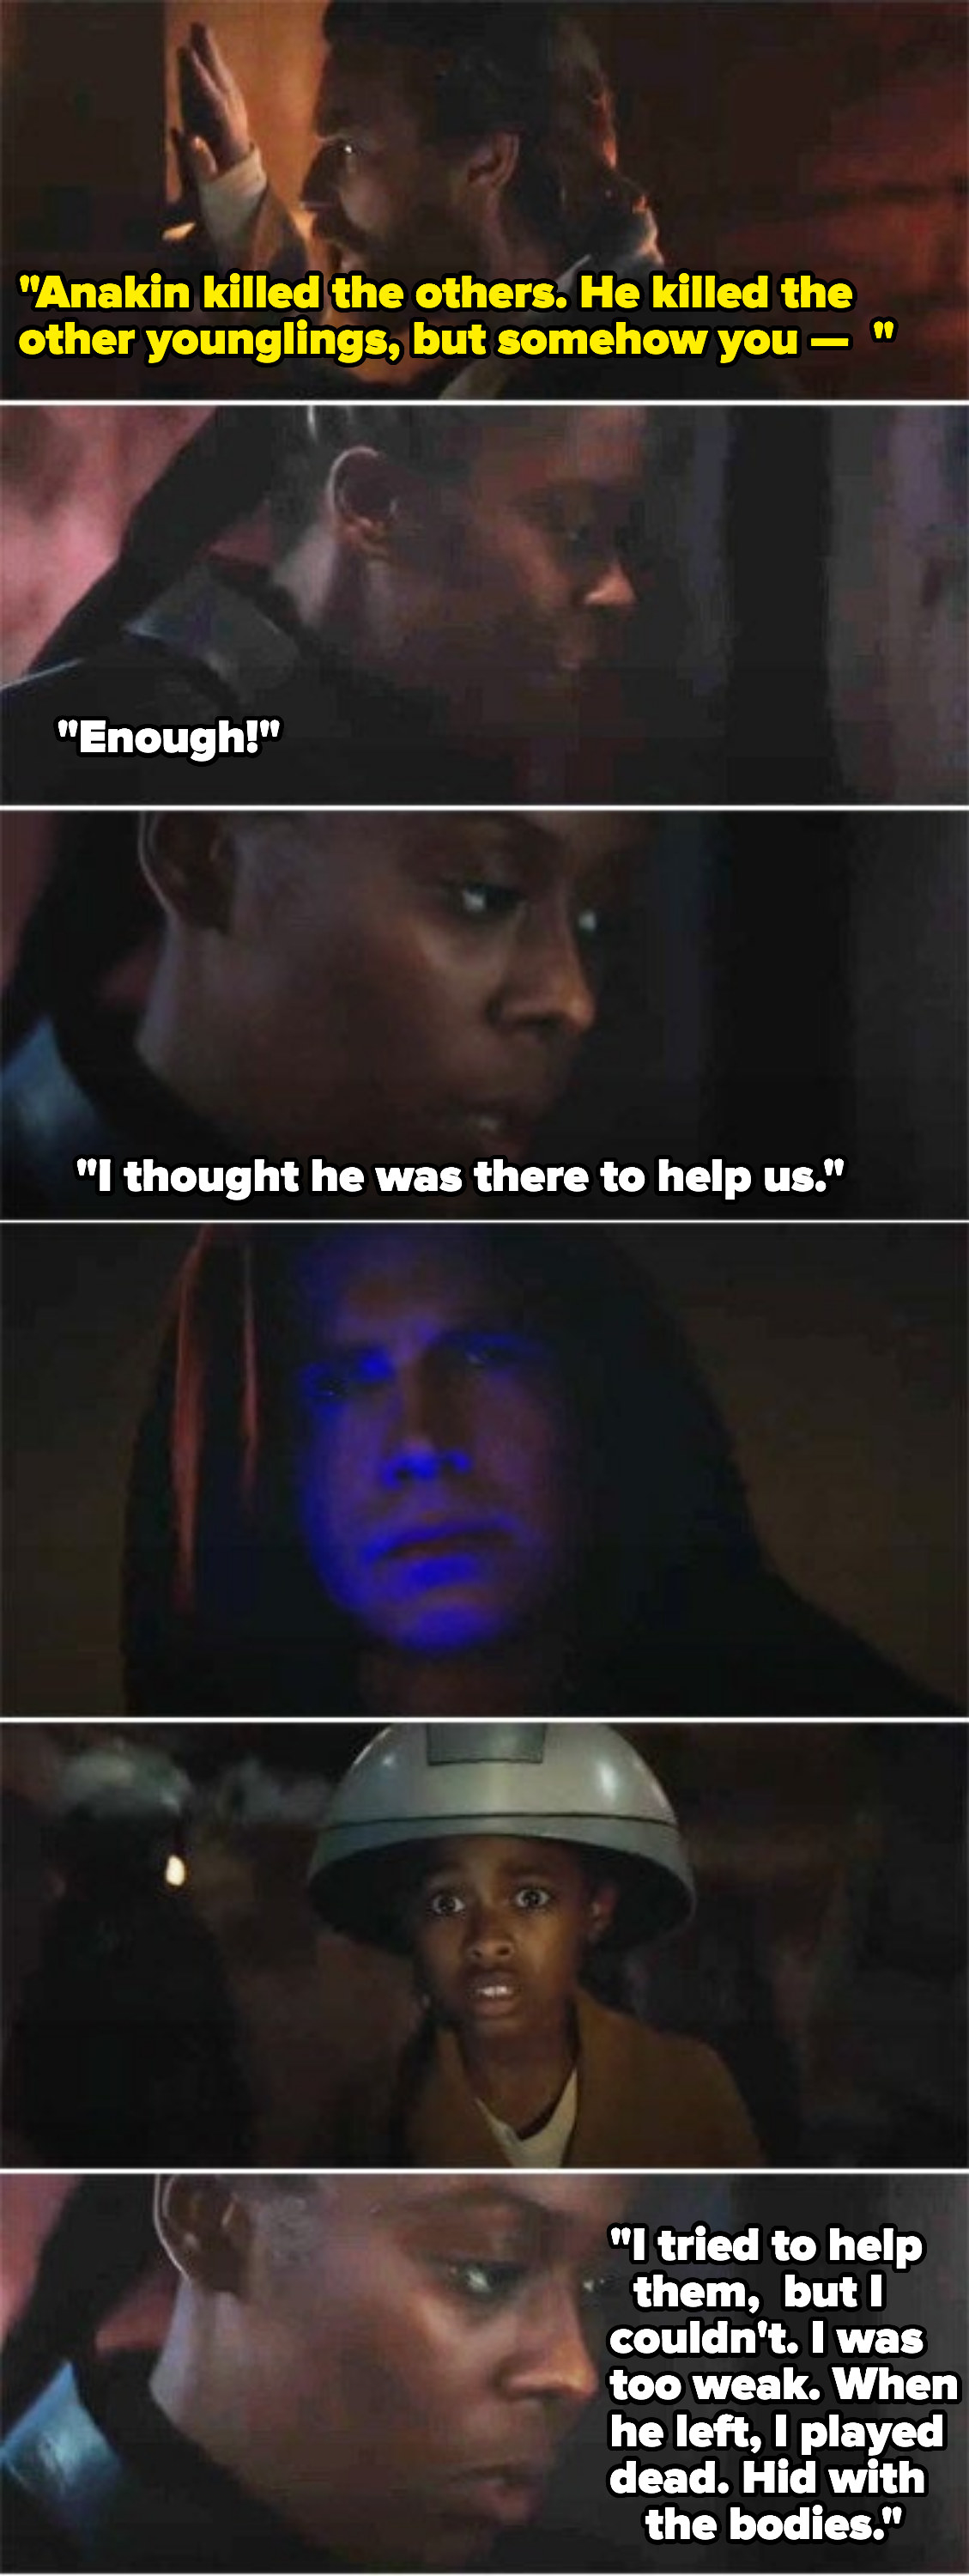 Screen shots from &quot;Obi-Wan Kenobi&quot;